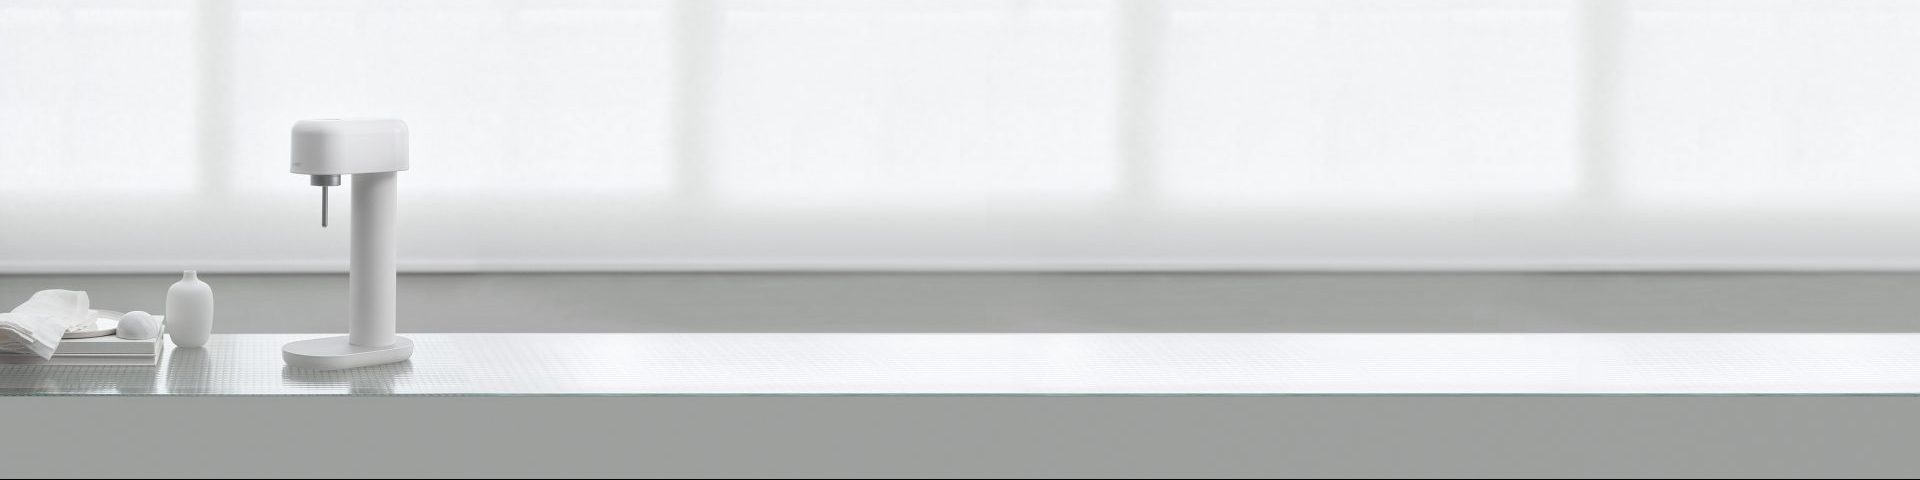 Ein weiß silberner Ruby 2 vor einem Fenster mit weißen vorhängen